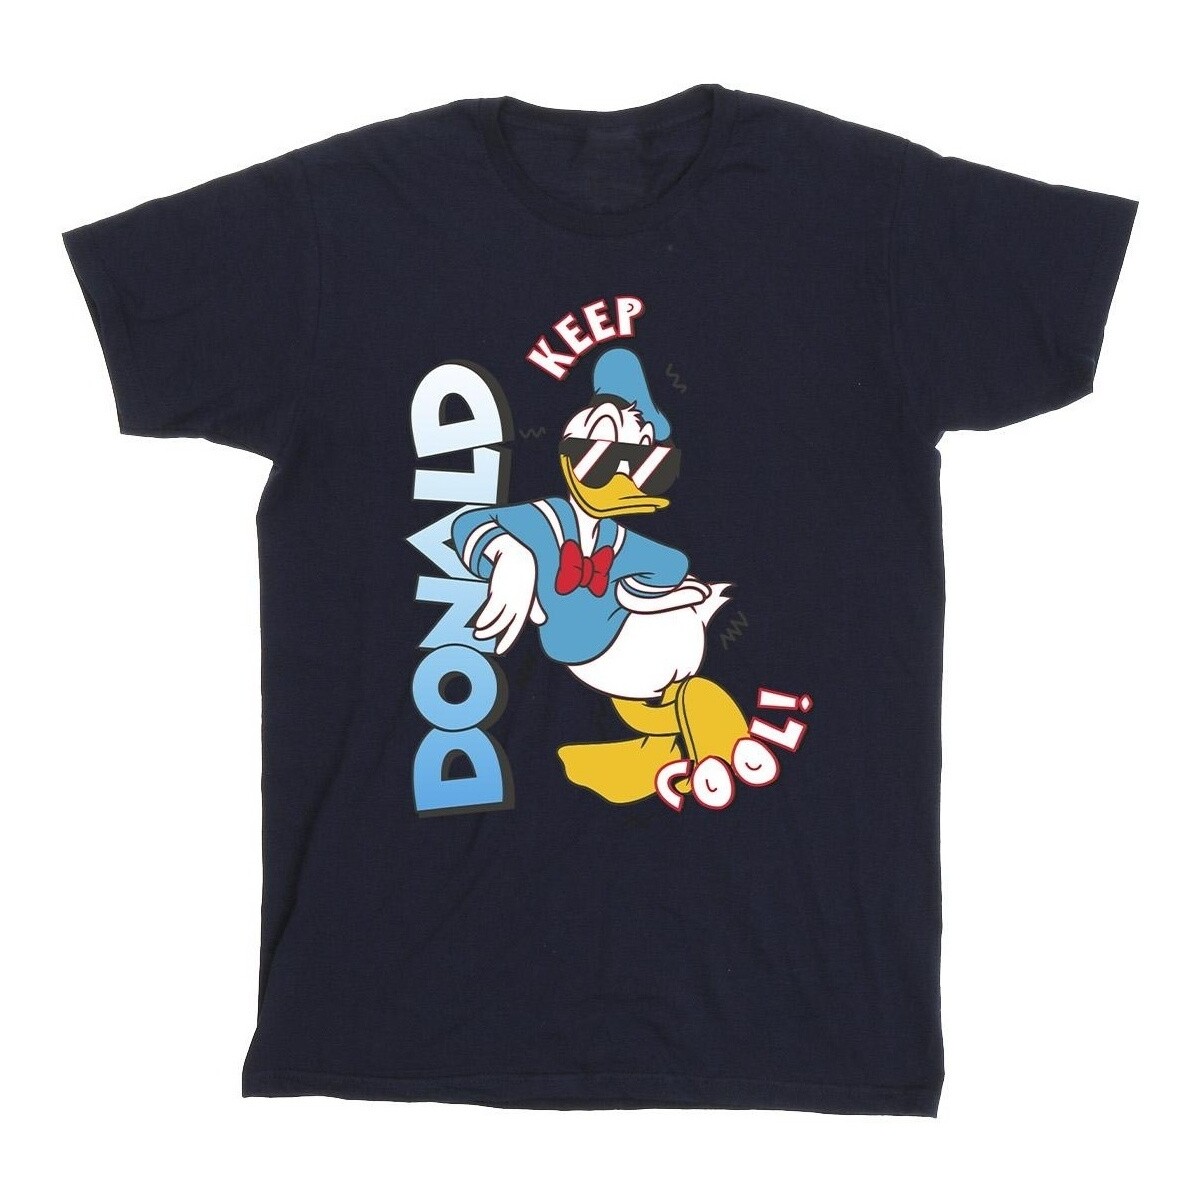 textil Niño Camisetas manga corta Disney Donald Duck Cool Azul